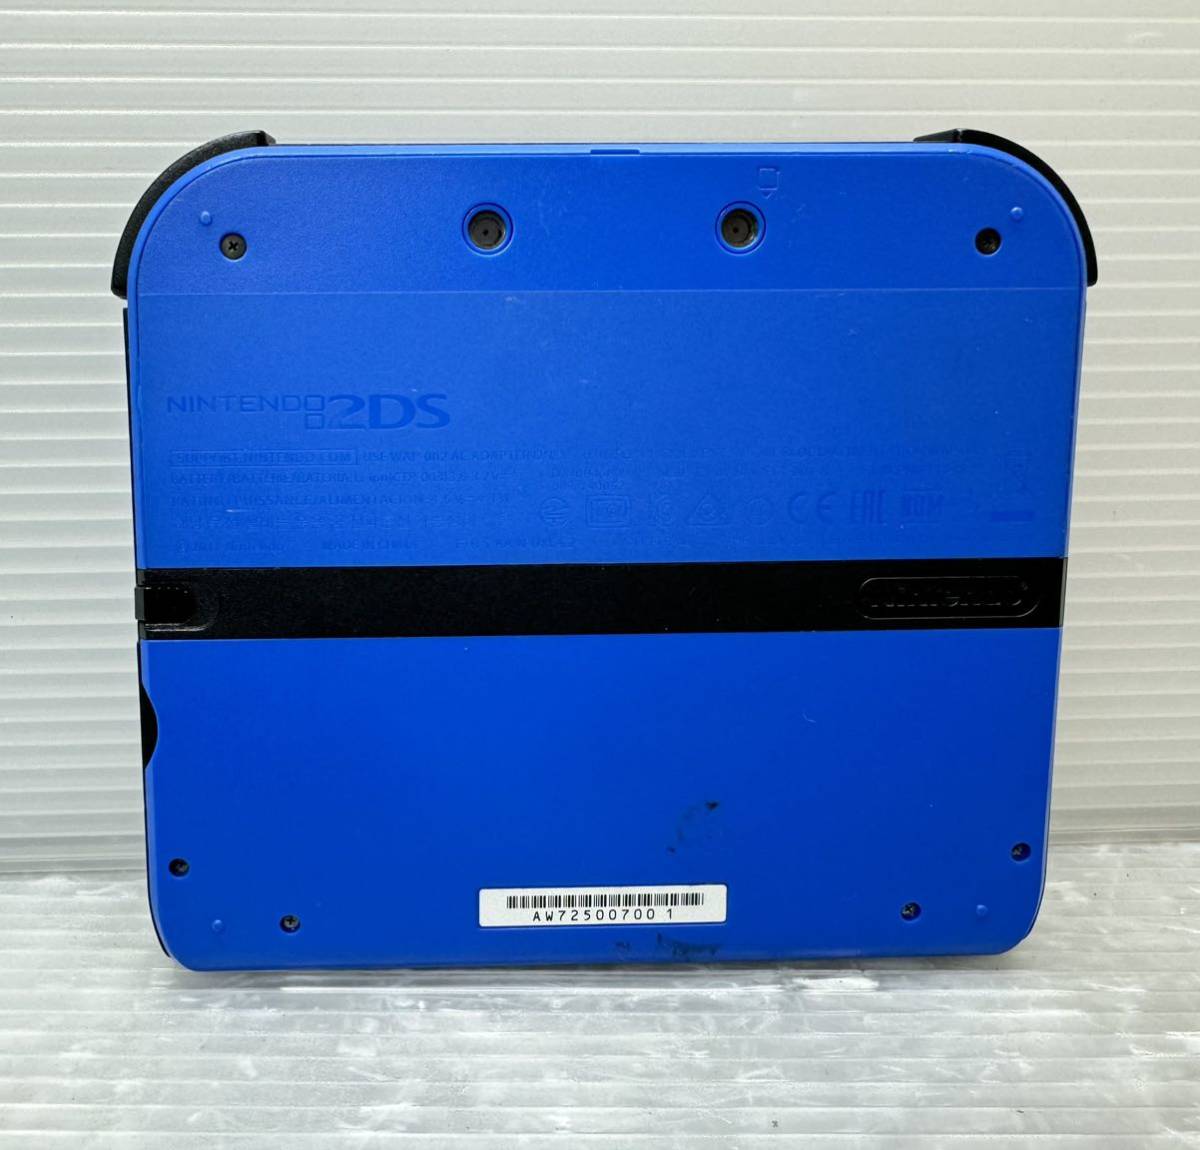 Nintendo 北米版 ニンテンドー2DS (FTR-001) ブルー 本体のみ 付属品なし 海外版 初期化済み 中古動作確認済み_画像2